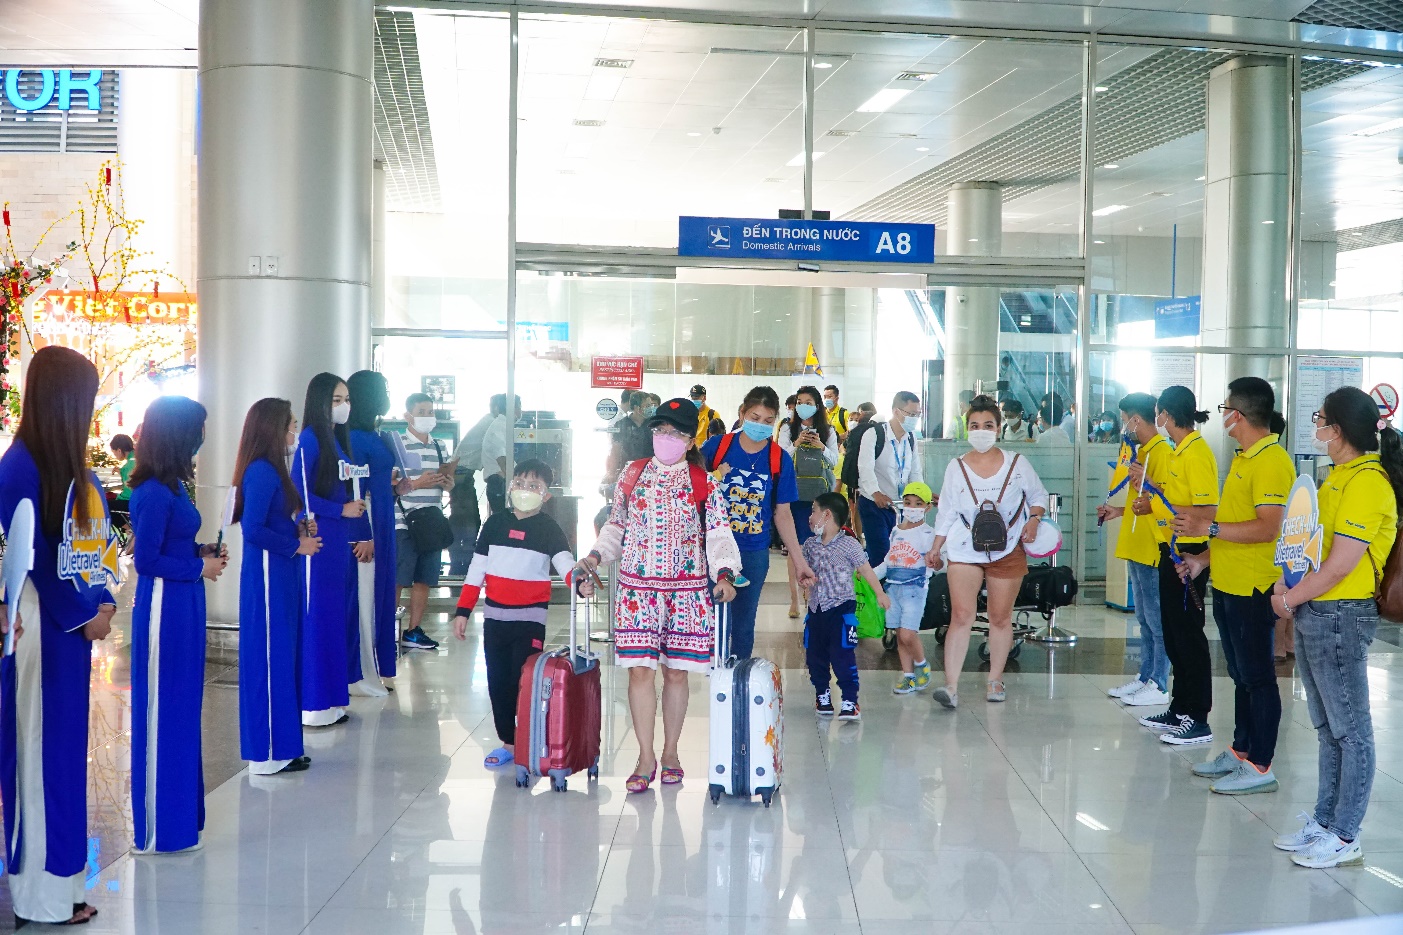 Vietravel Airlines khai trương hệ thống phòng vé trên toàn quốc - Ảnh 4.